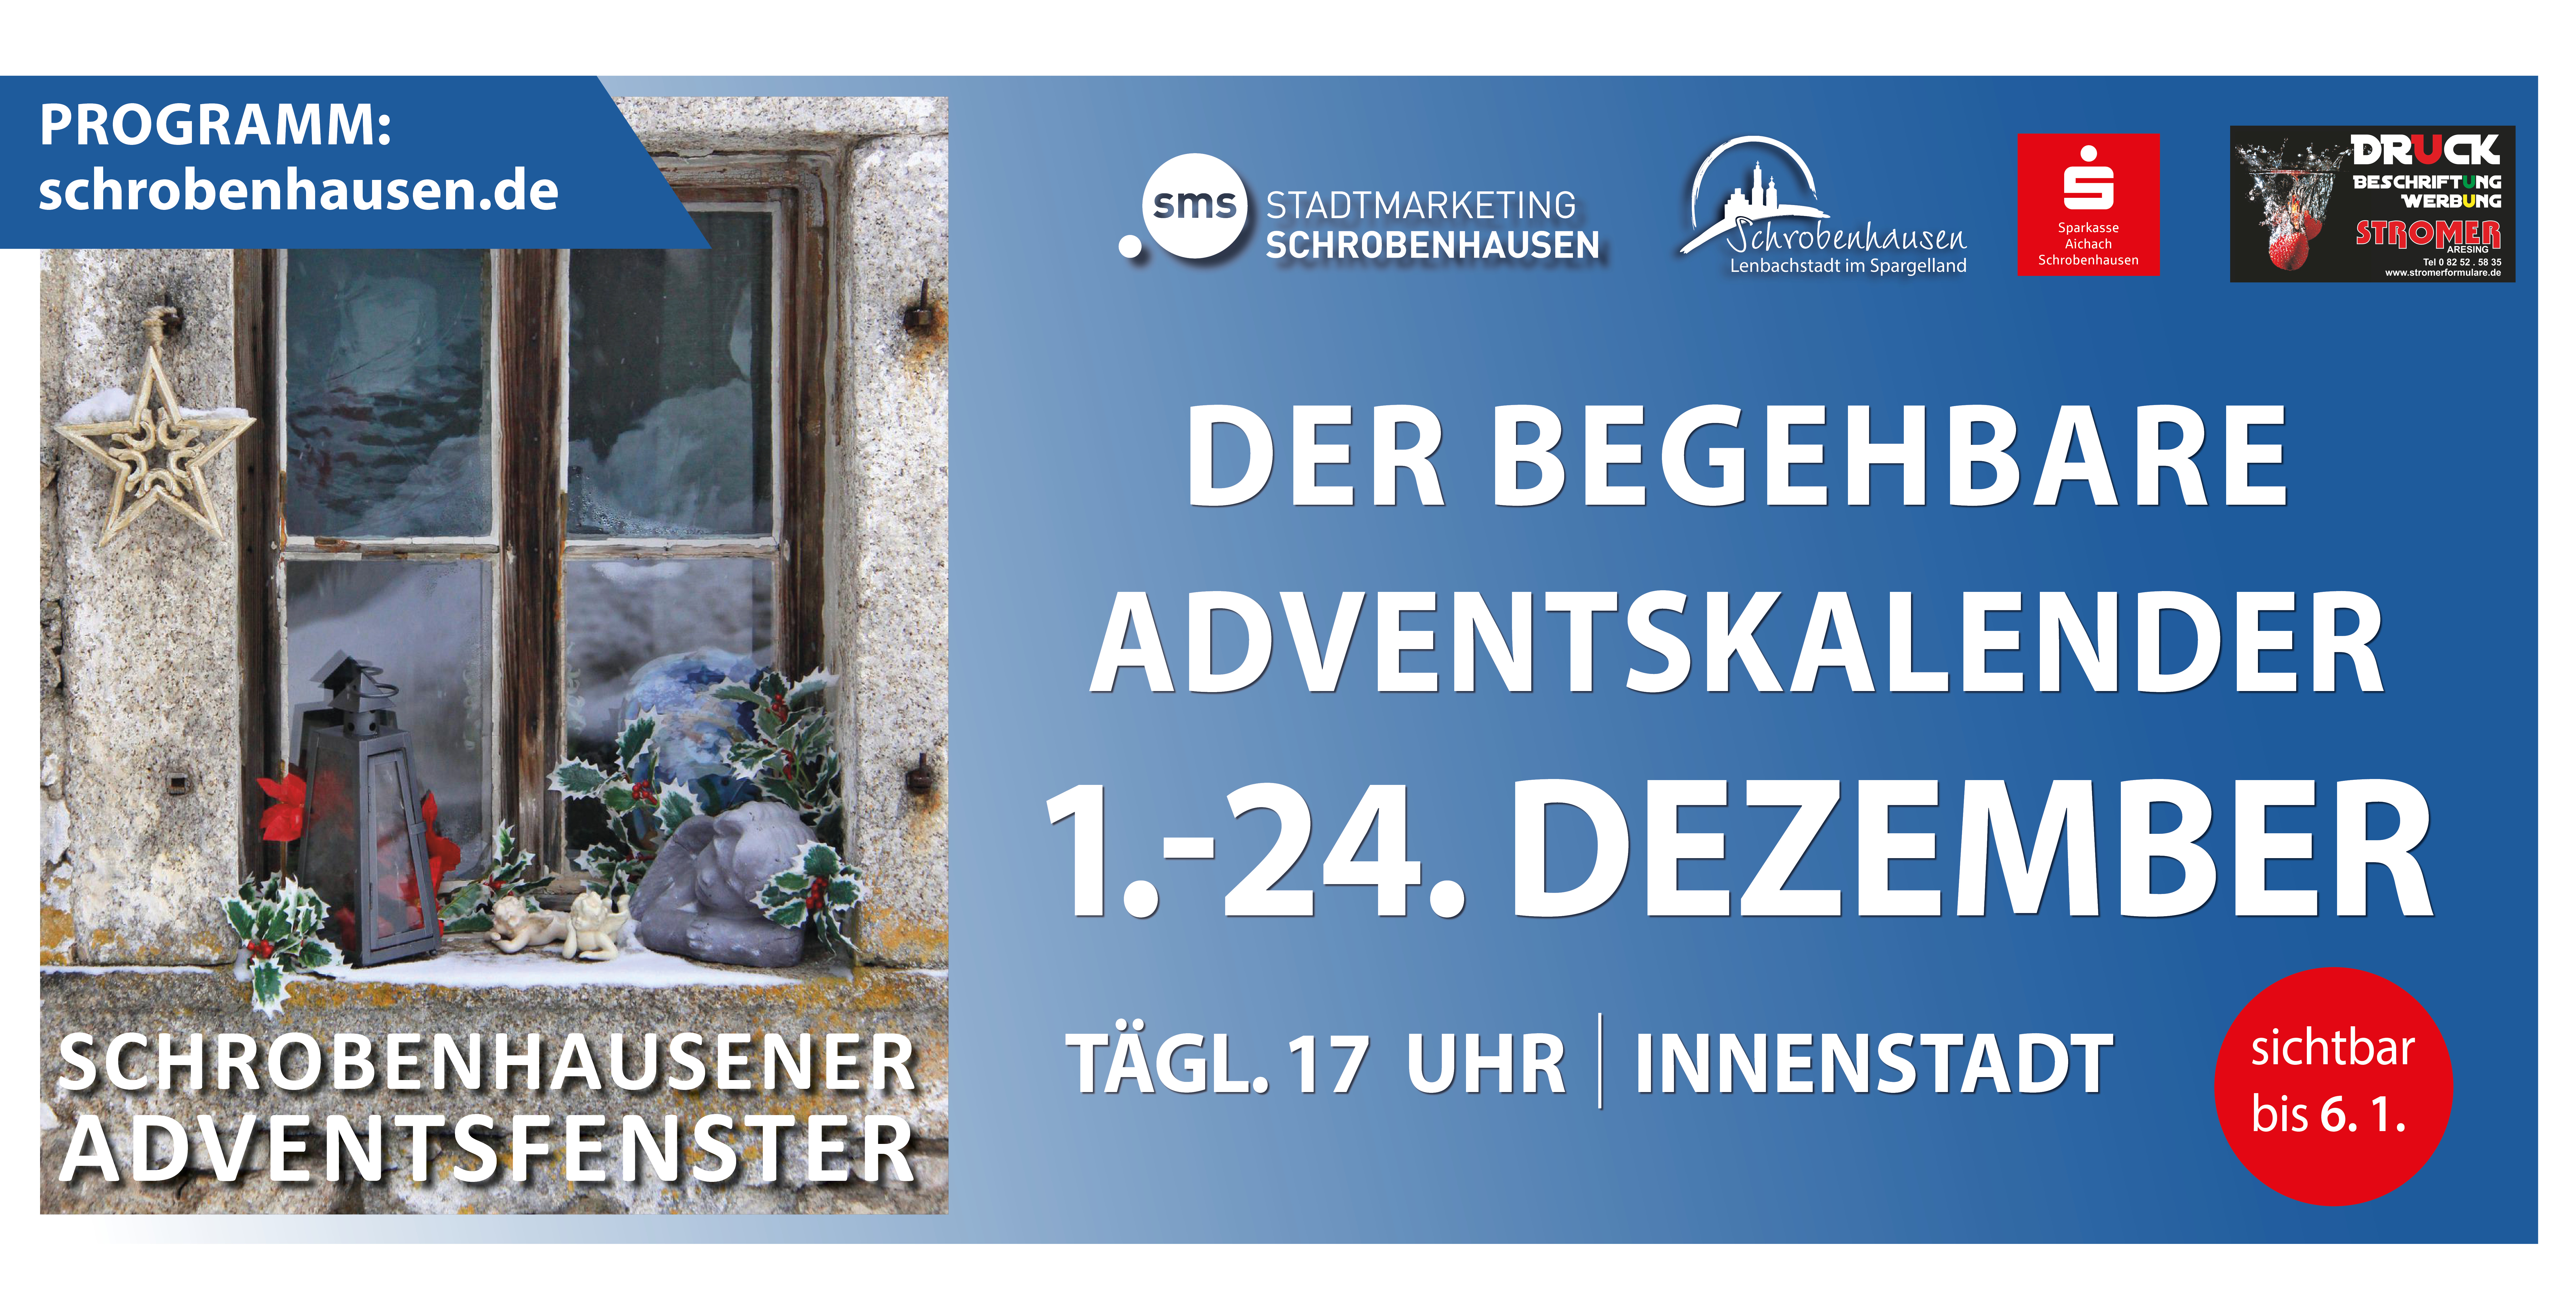 Schrobenhausener Adventsfenster  - Der begehbare Adventskalender